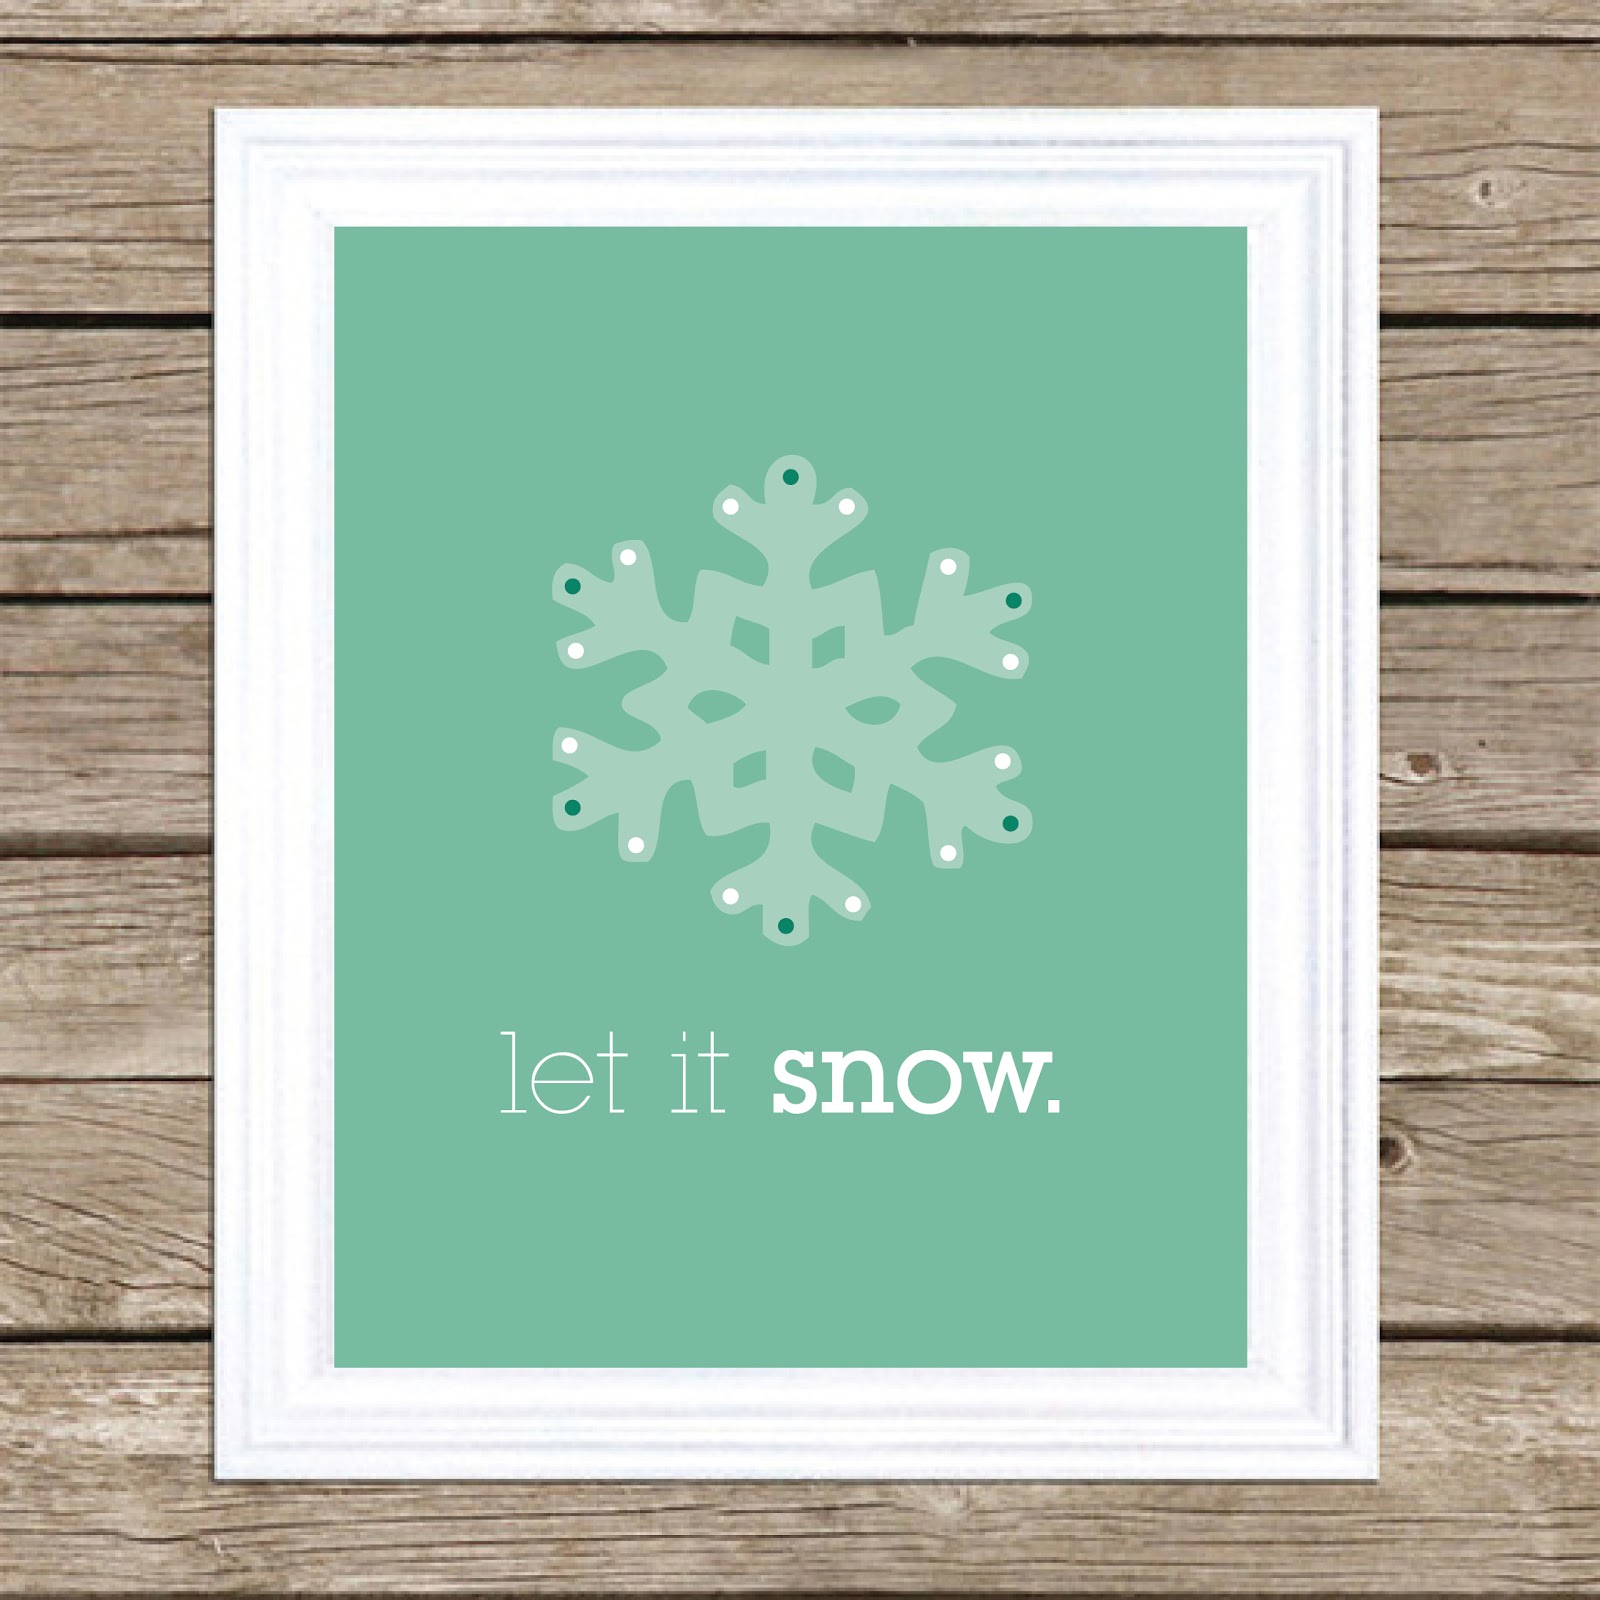 free-winter-wall-art-let-it-snow